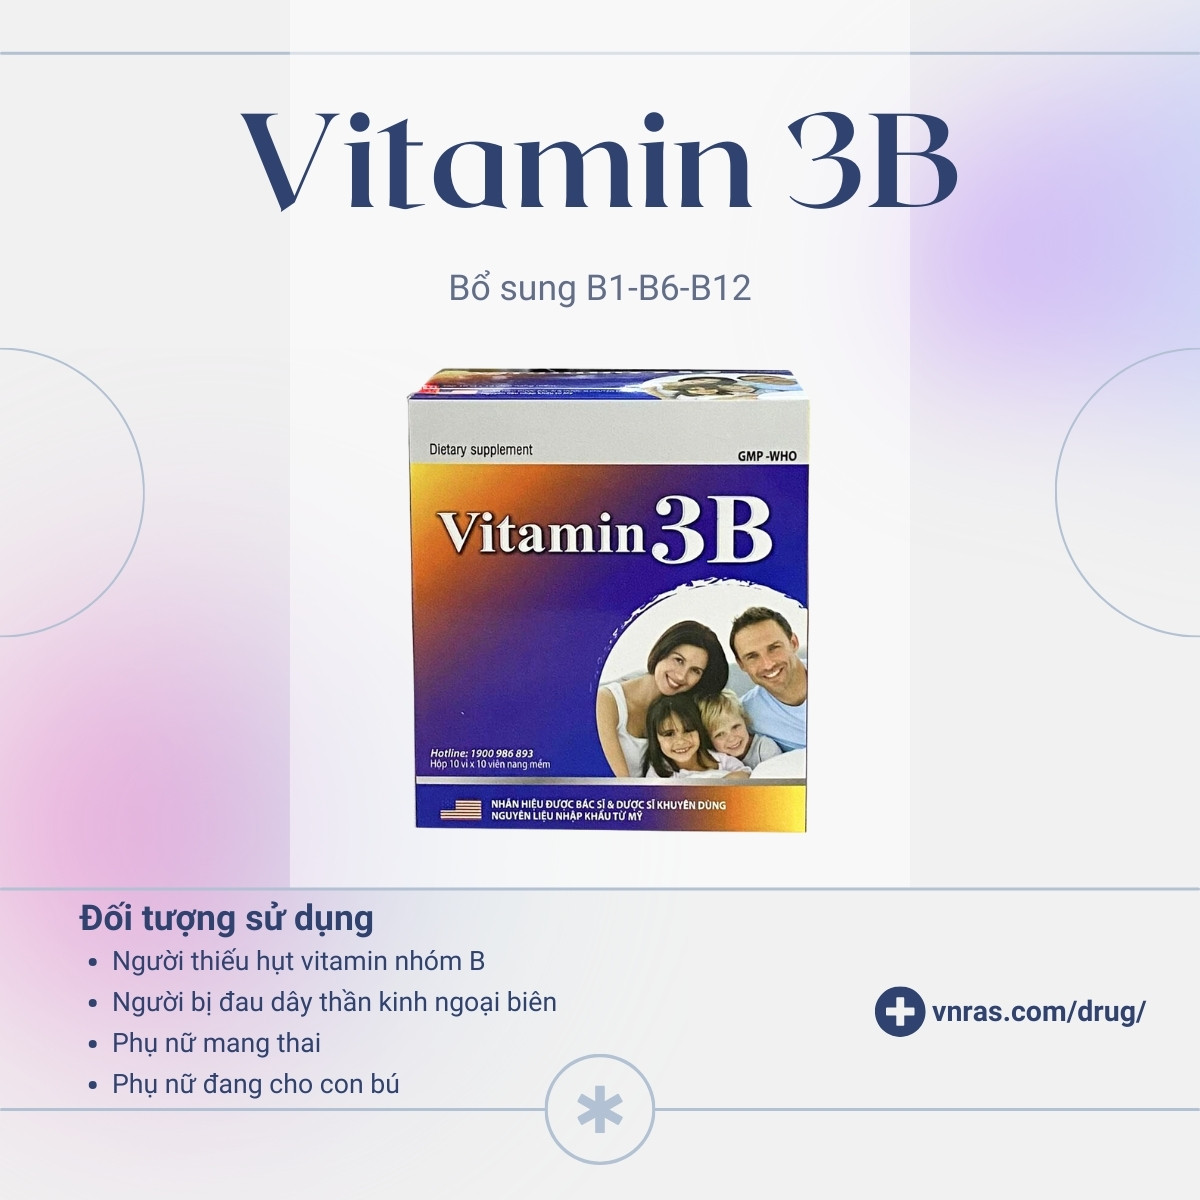 Đối tượng sử dụng Vitamin 3B USA Pharma